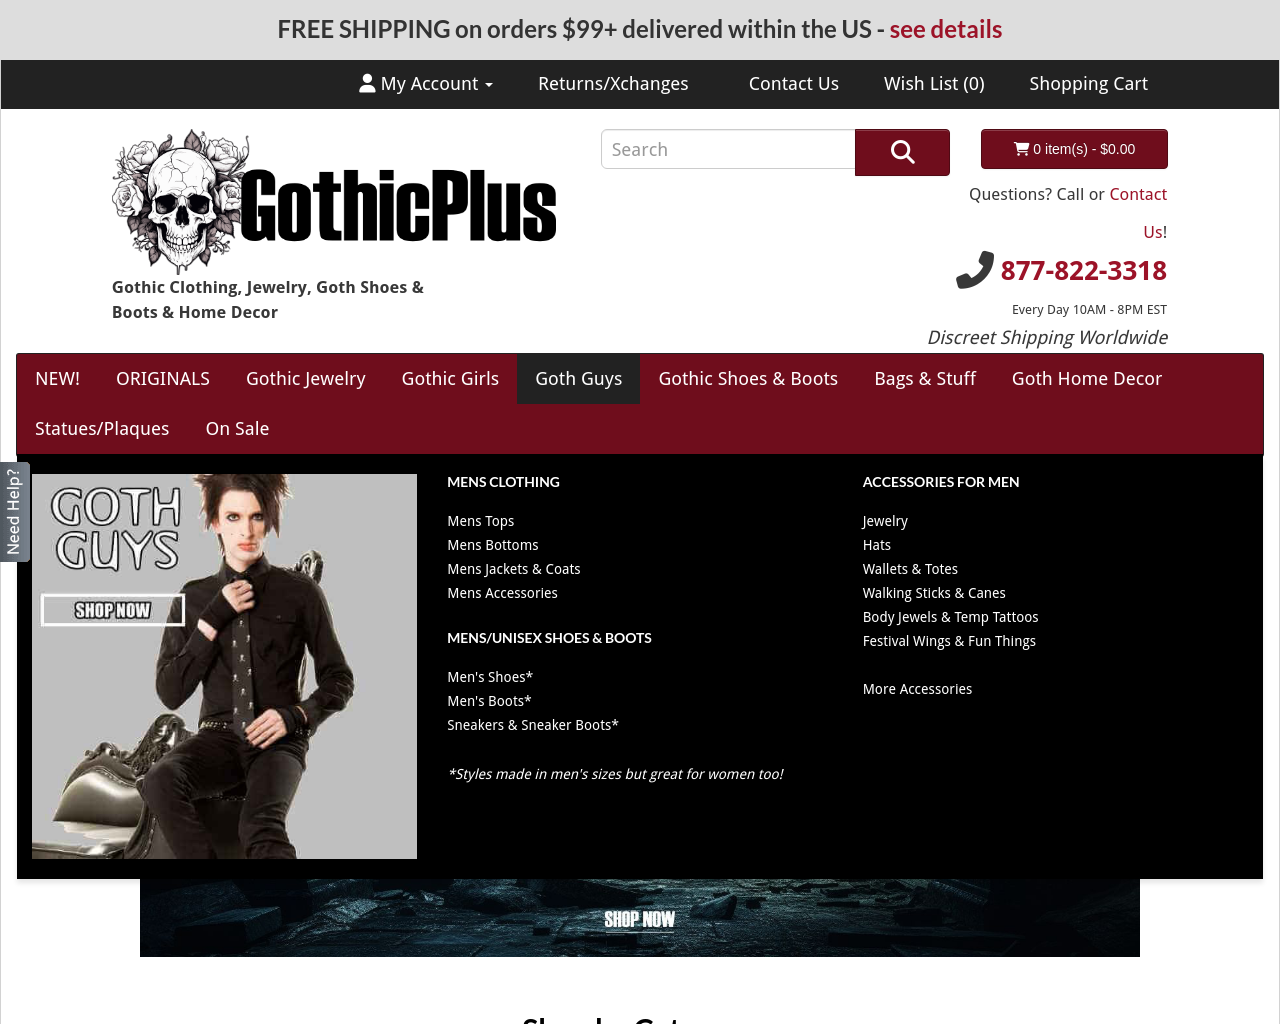 gothicplus.com